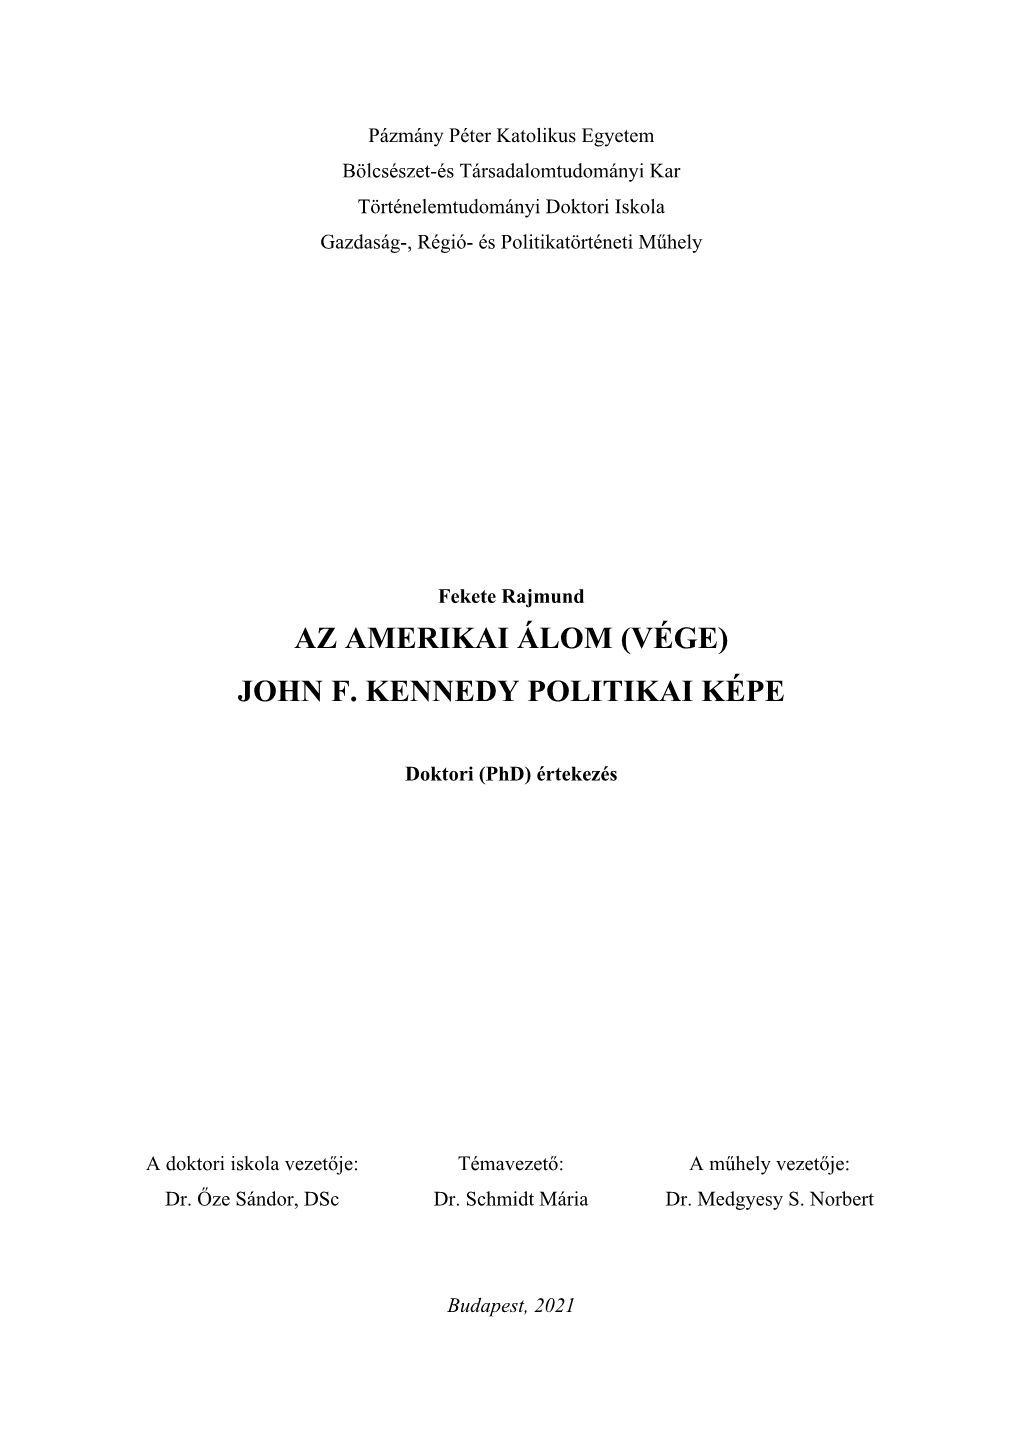 Az Amerikai Álom (Vége) John F. Kennedy Politikai Képe